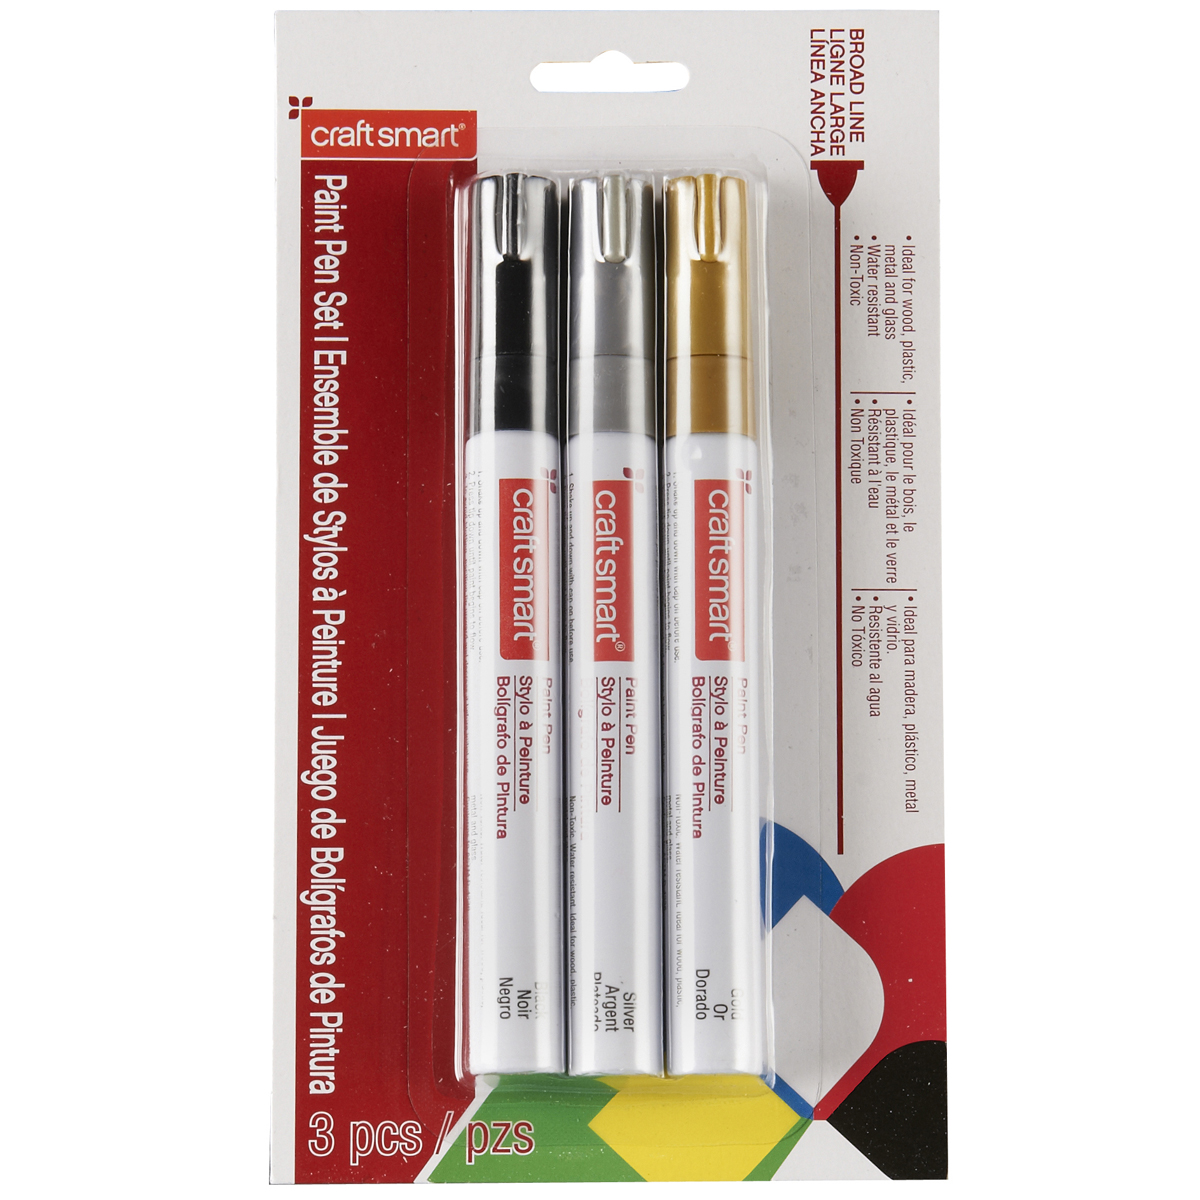 craft smart paint pen review